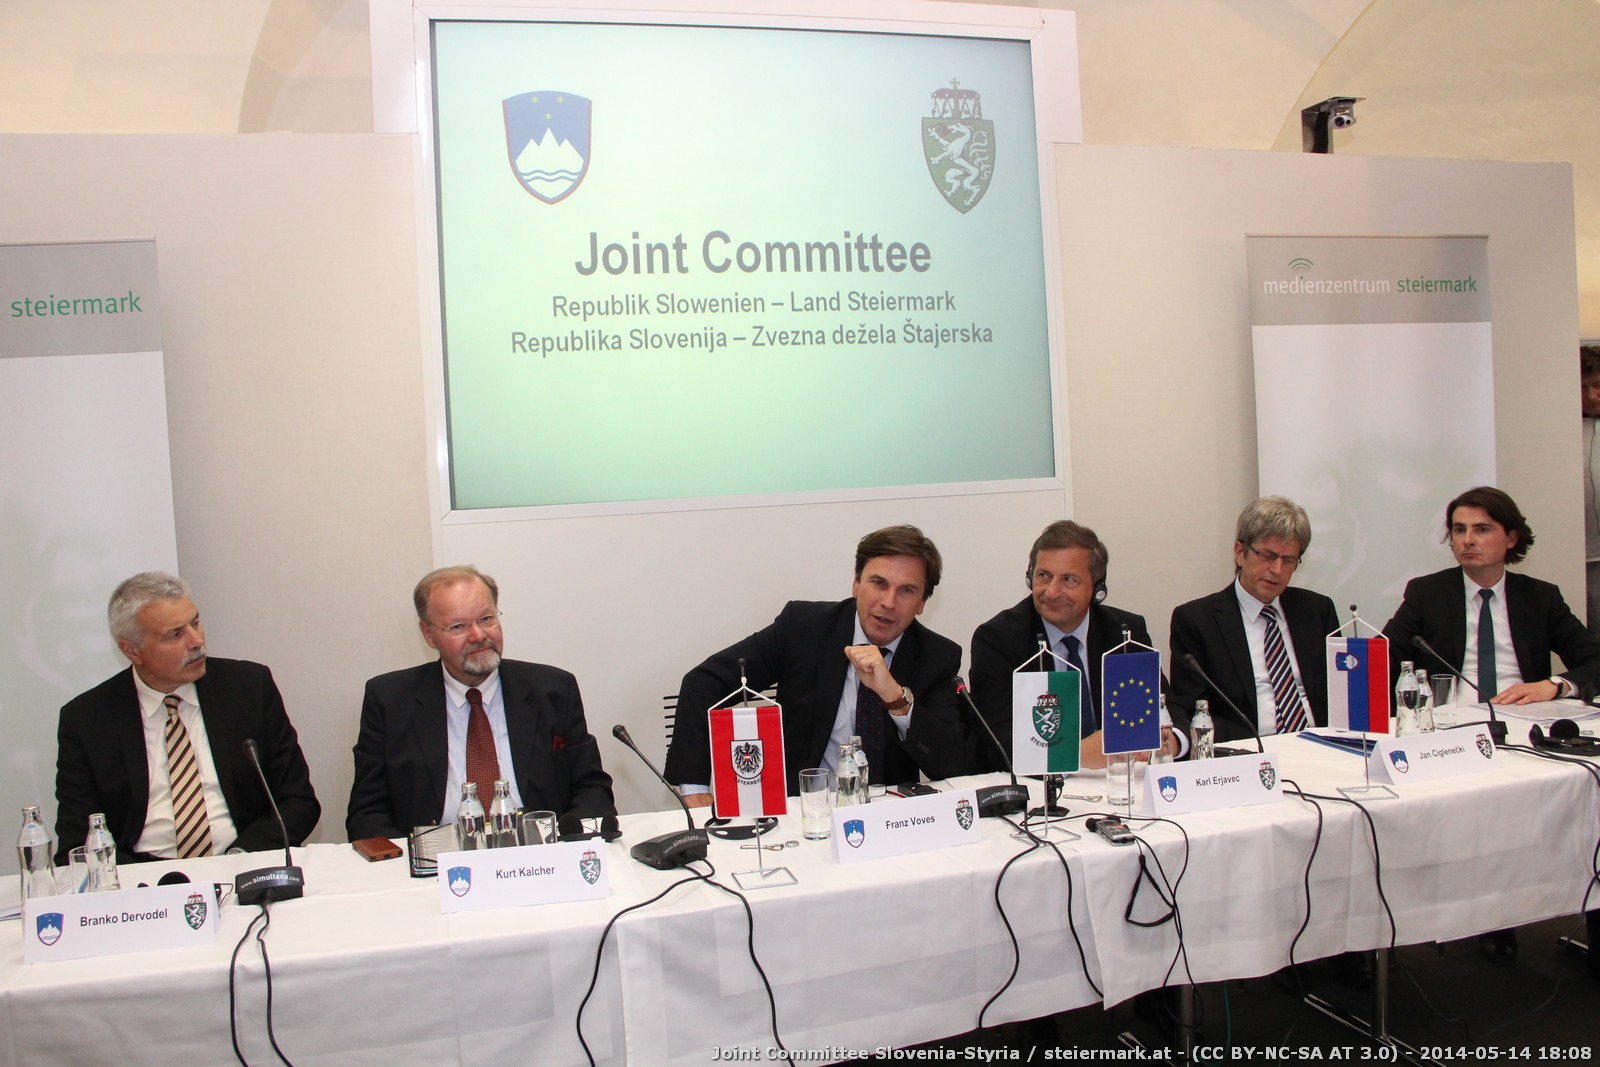 Joint Committee Slowenien-Steiermark